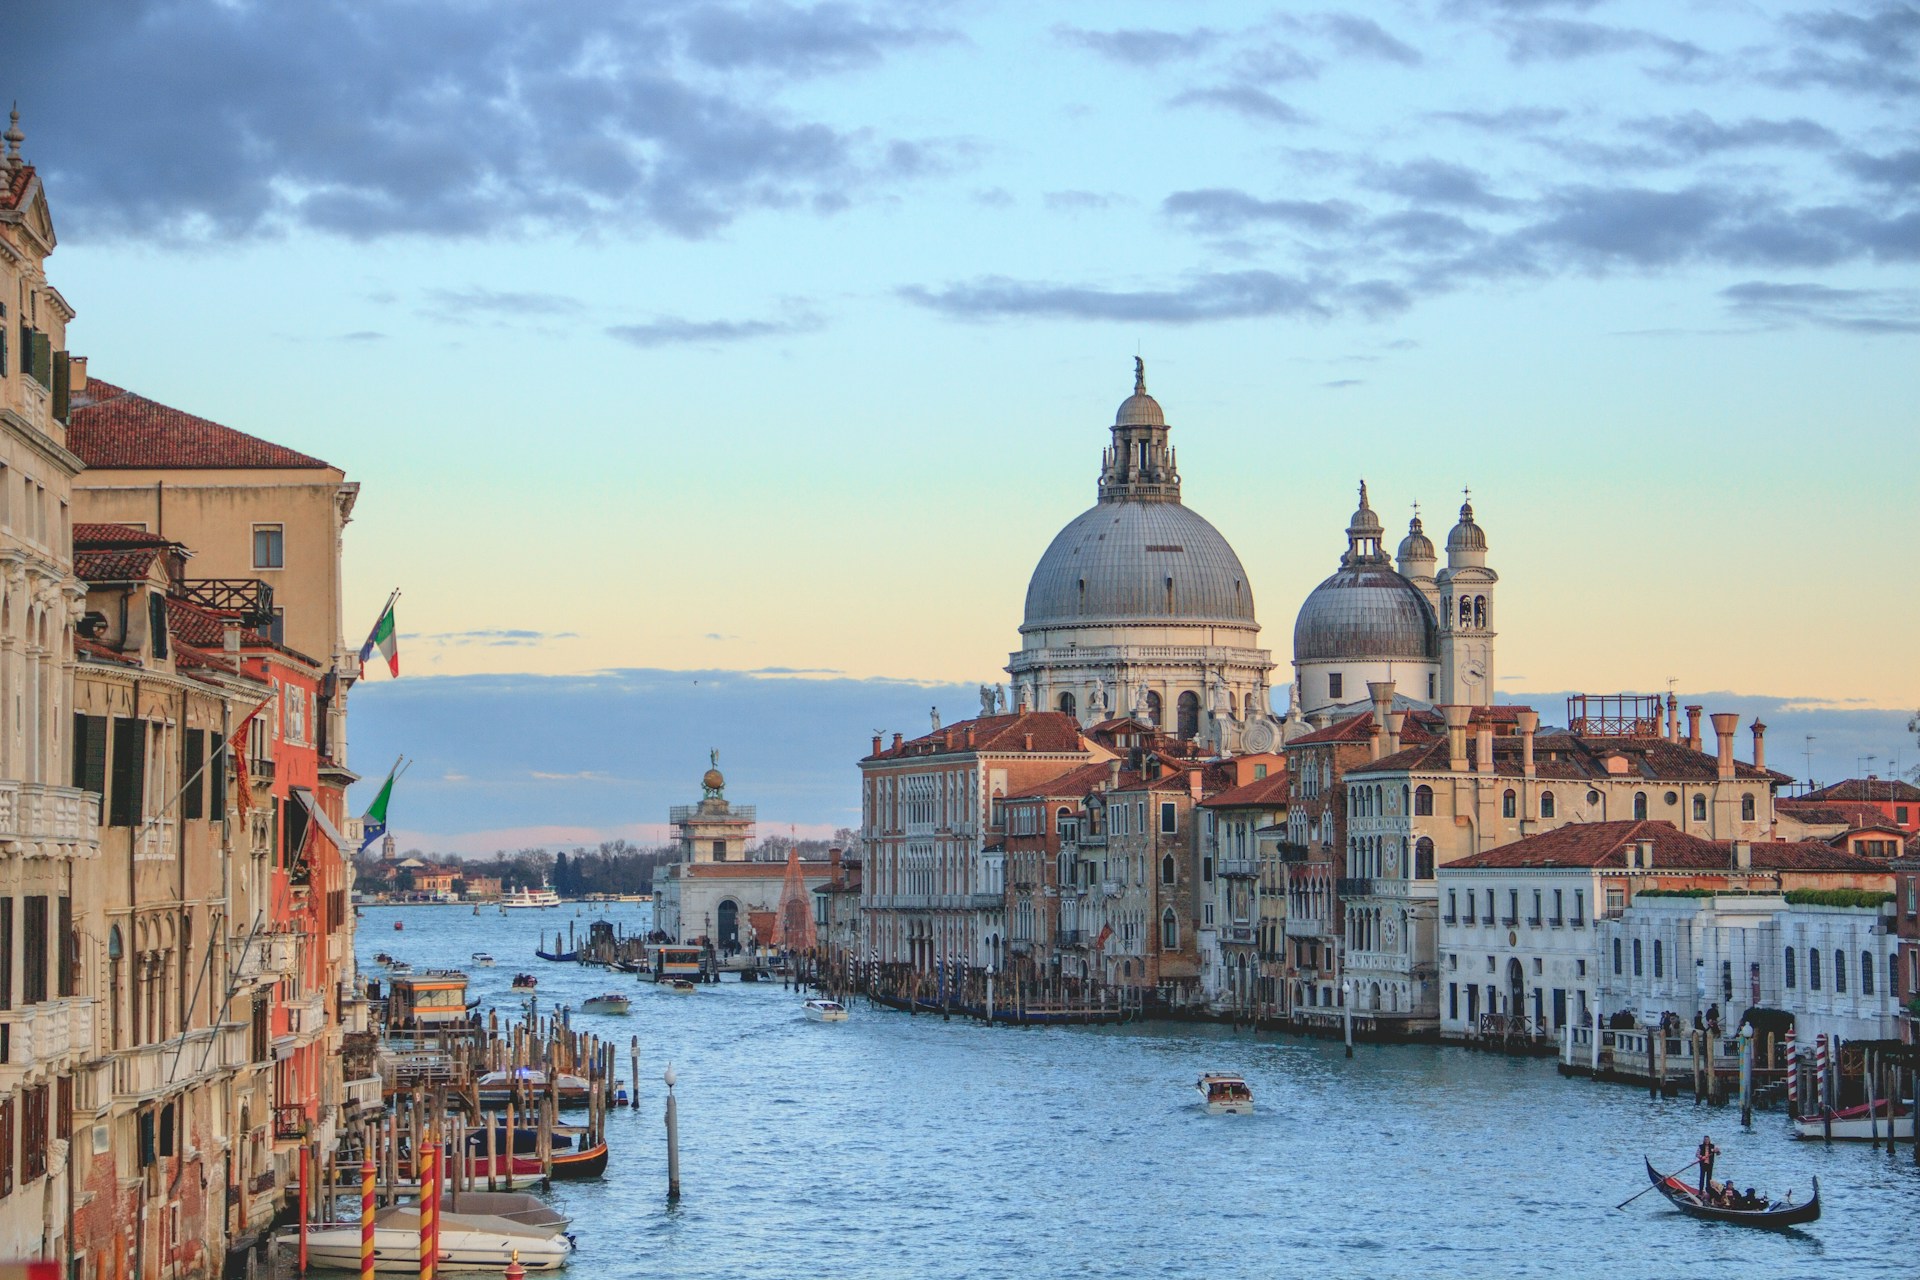 Plan zwiedzania Wenecji - co zobaczyć i gdzie się zatrzymać